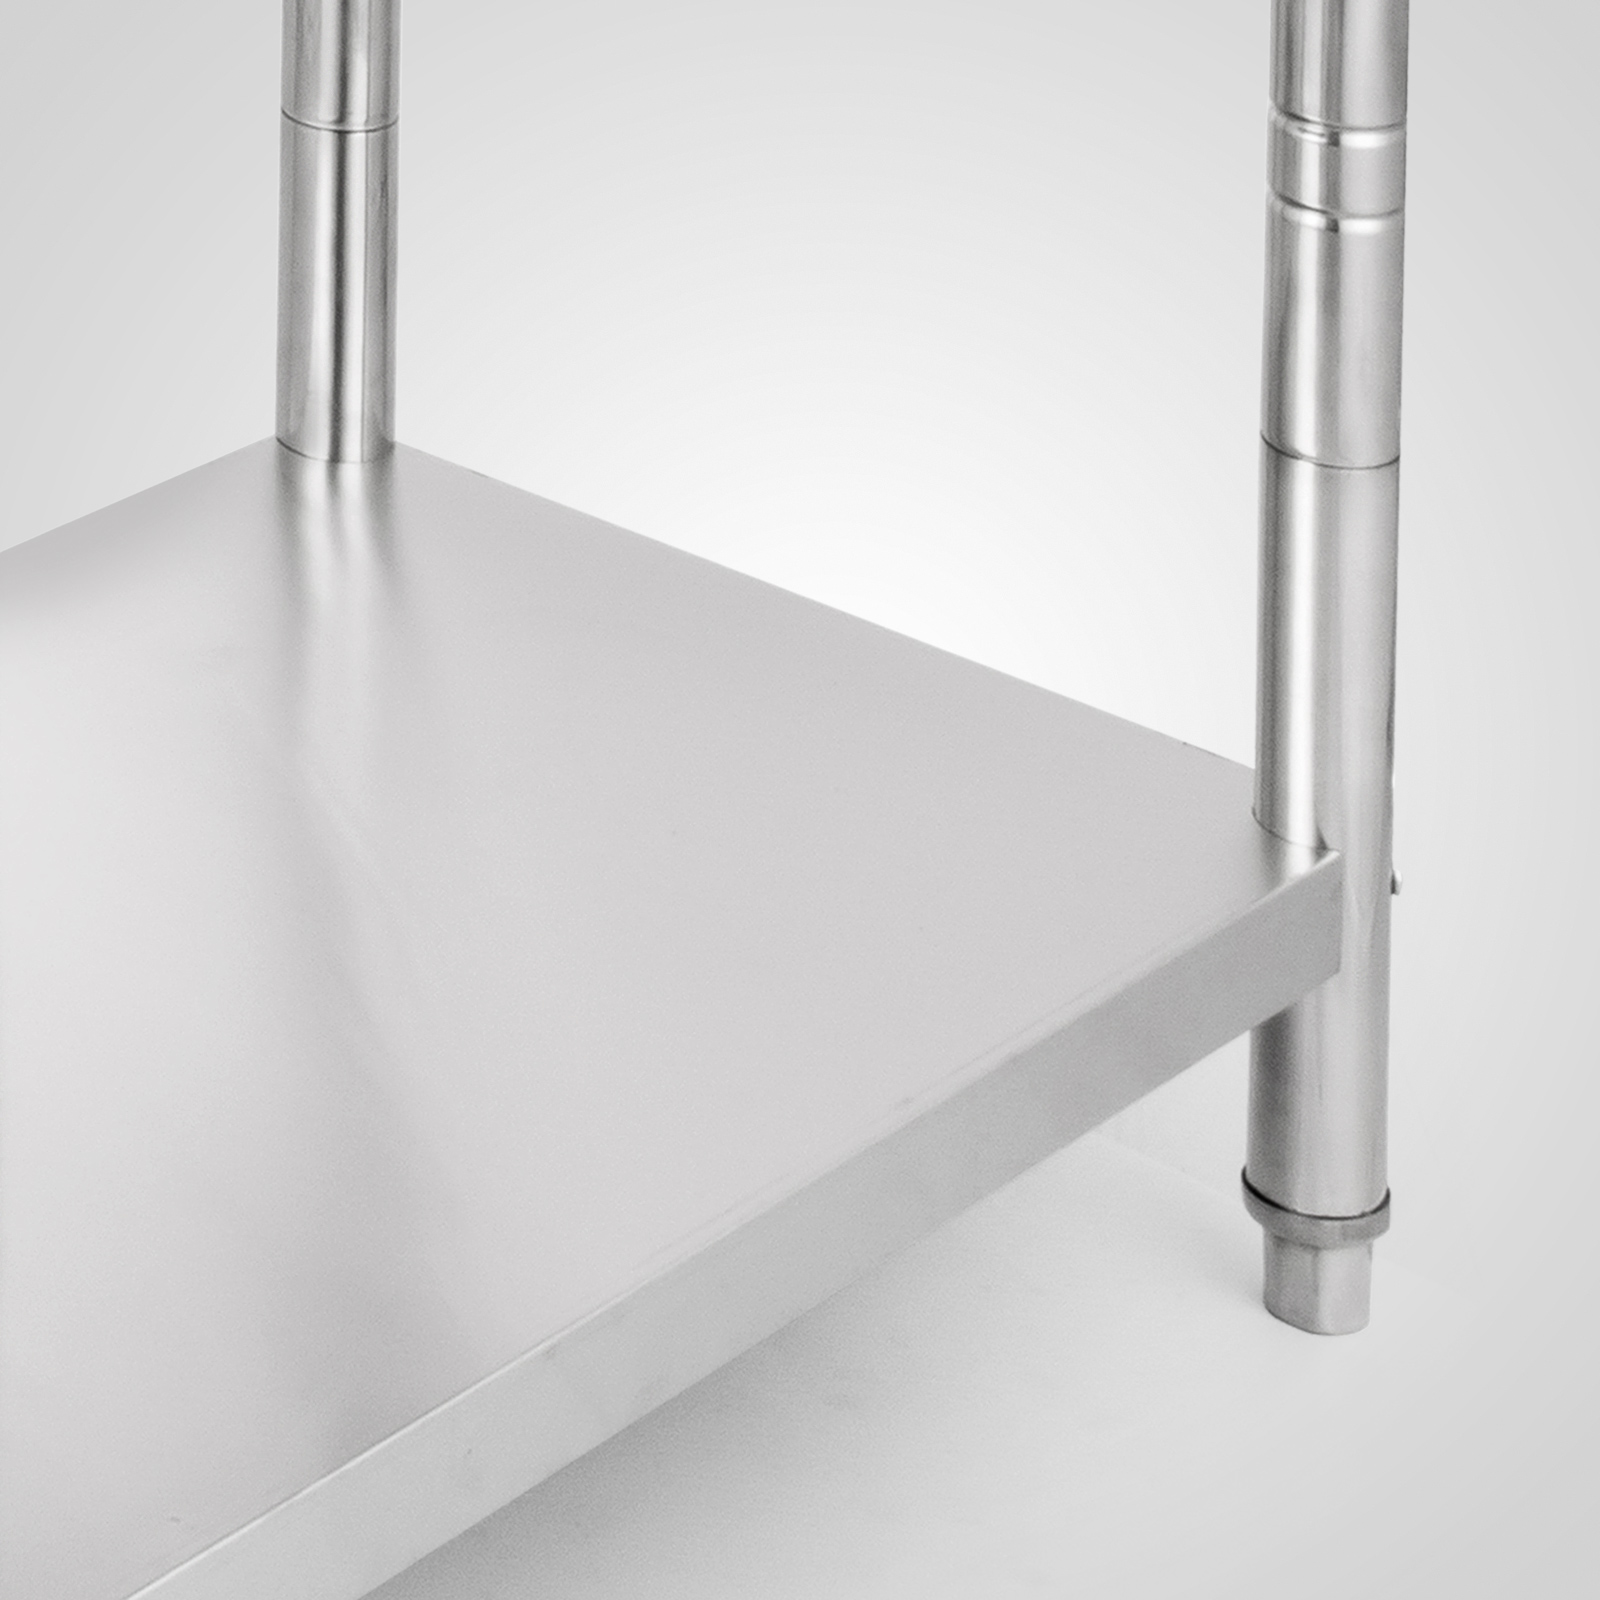 610x915mm tavolo in acciaio inox ristorazione banco piano for Ikea planner professionale